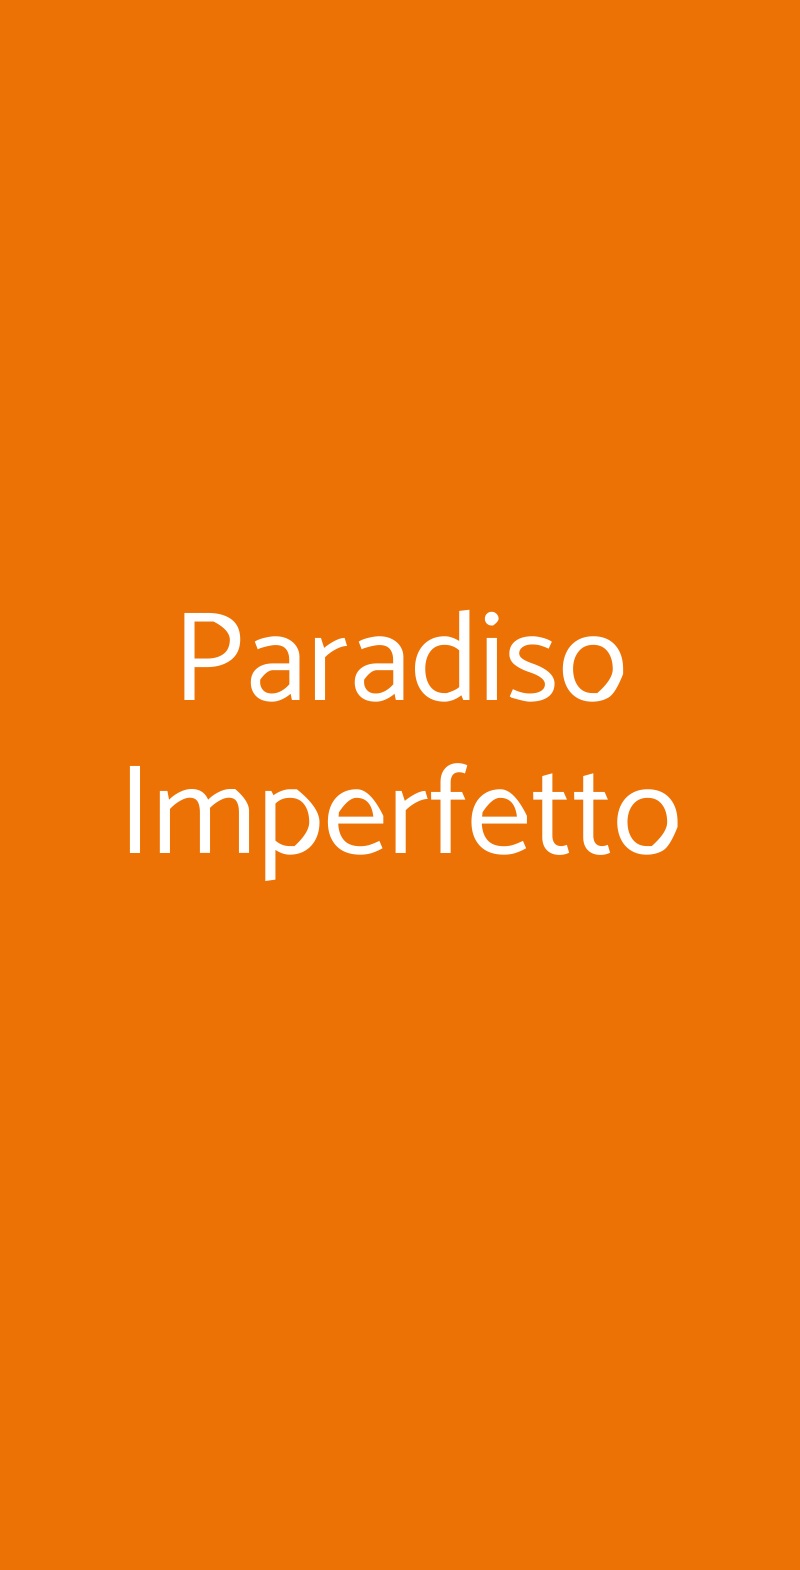 Paradiso Imperfetto San Zeno di Montagna menù 1 pagina